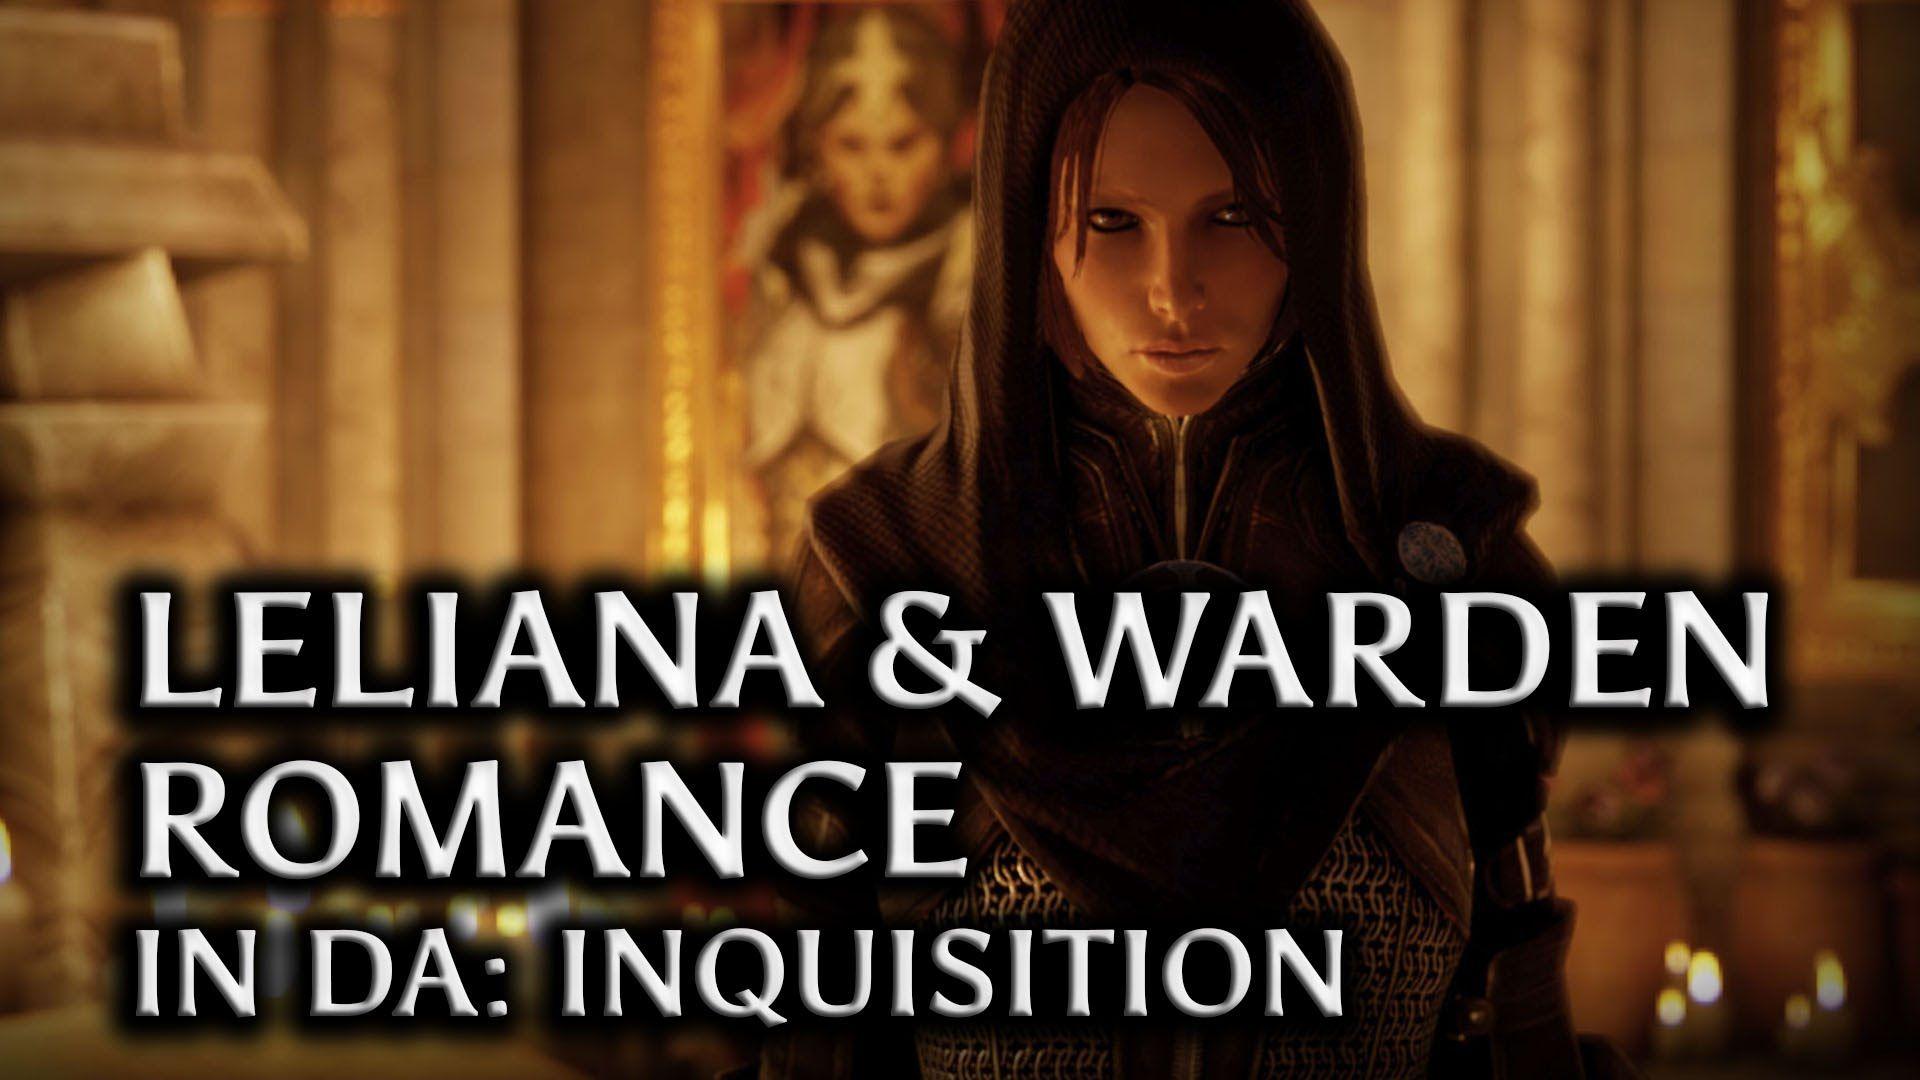 Dragon Age: Inquisition & the Warden Romance in DAI